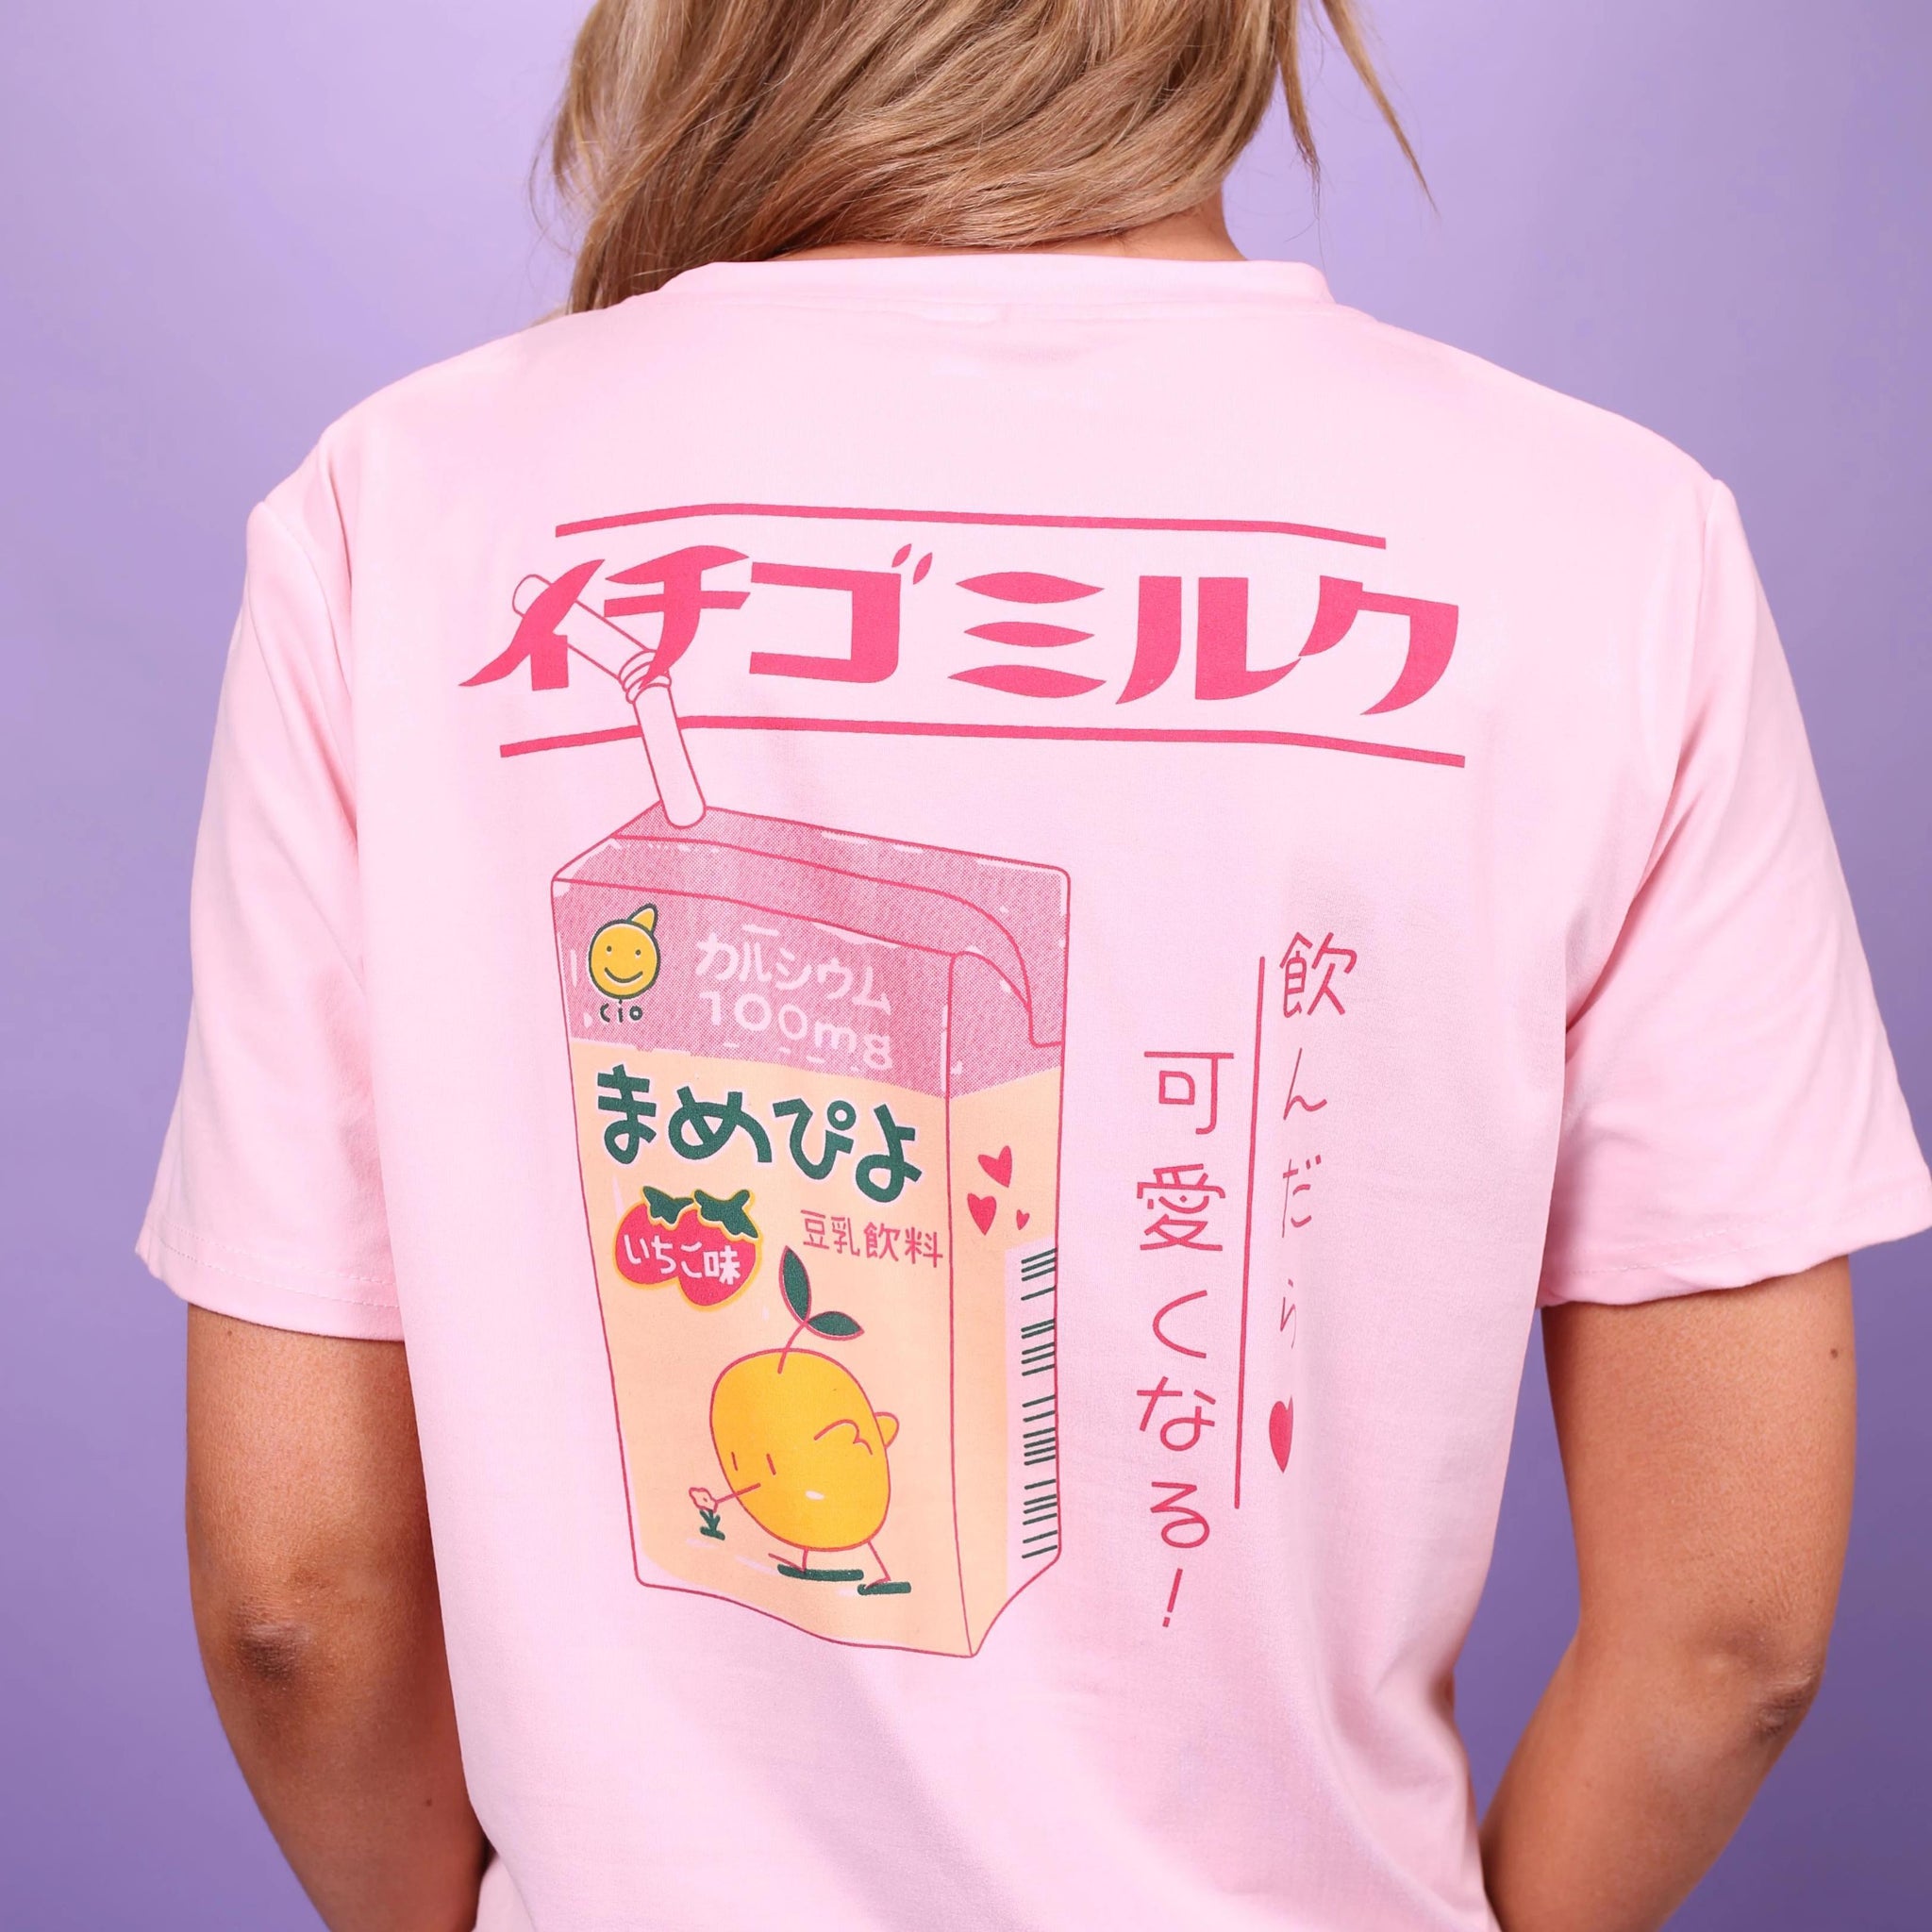 Japanese Strawberry Milk Shirt - Aesthetic Clothing